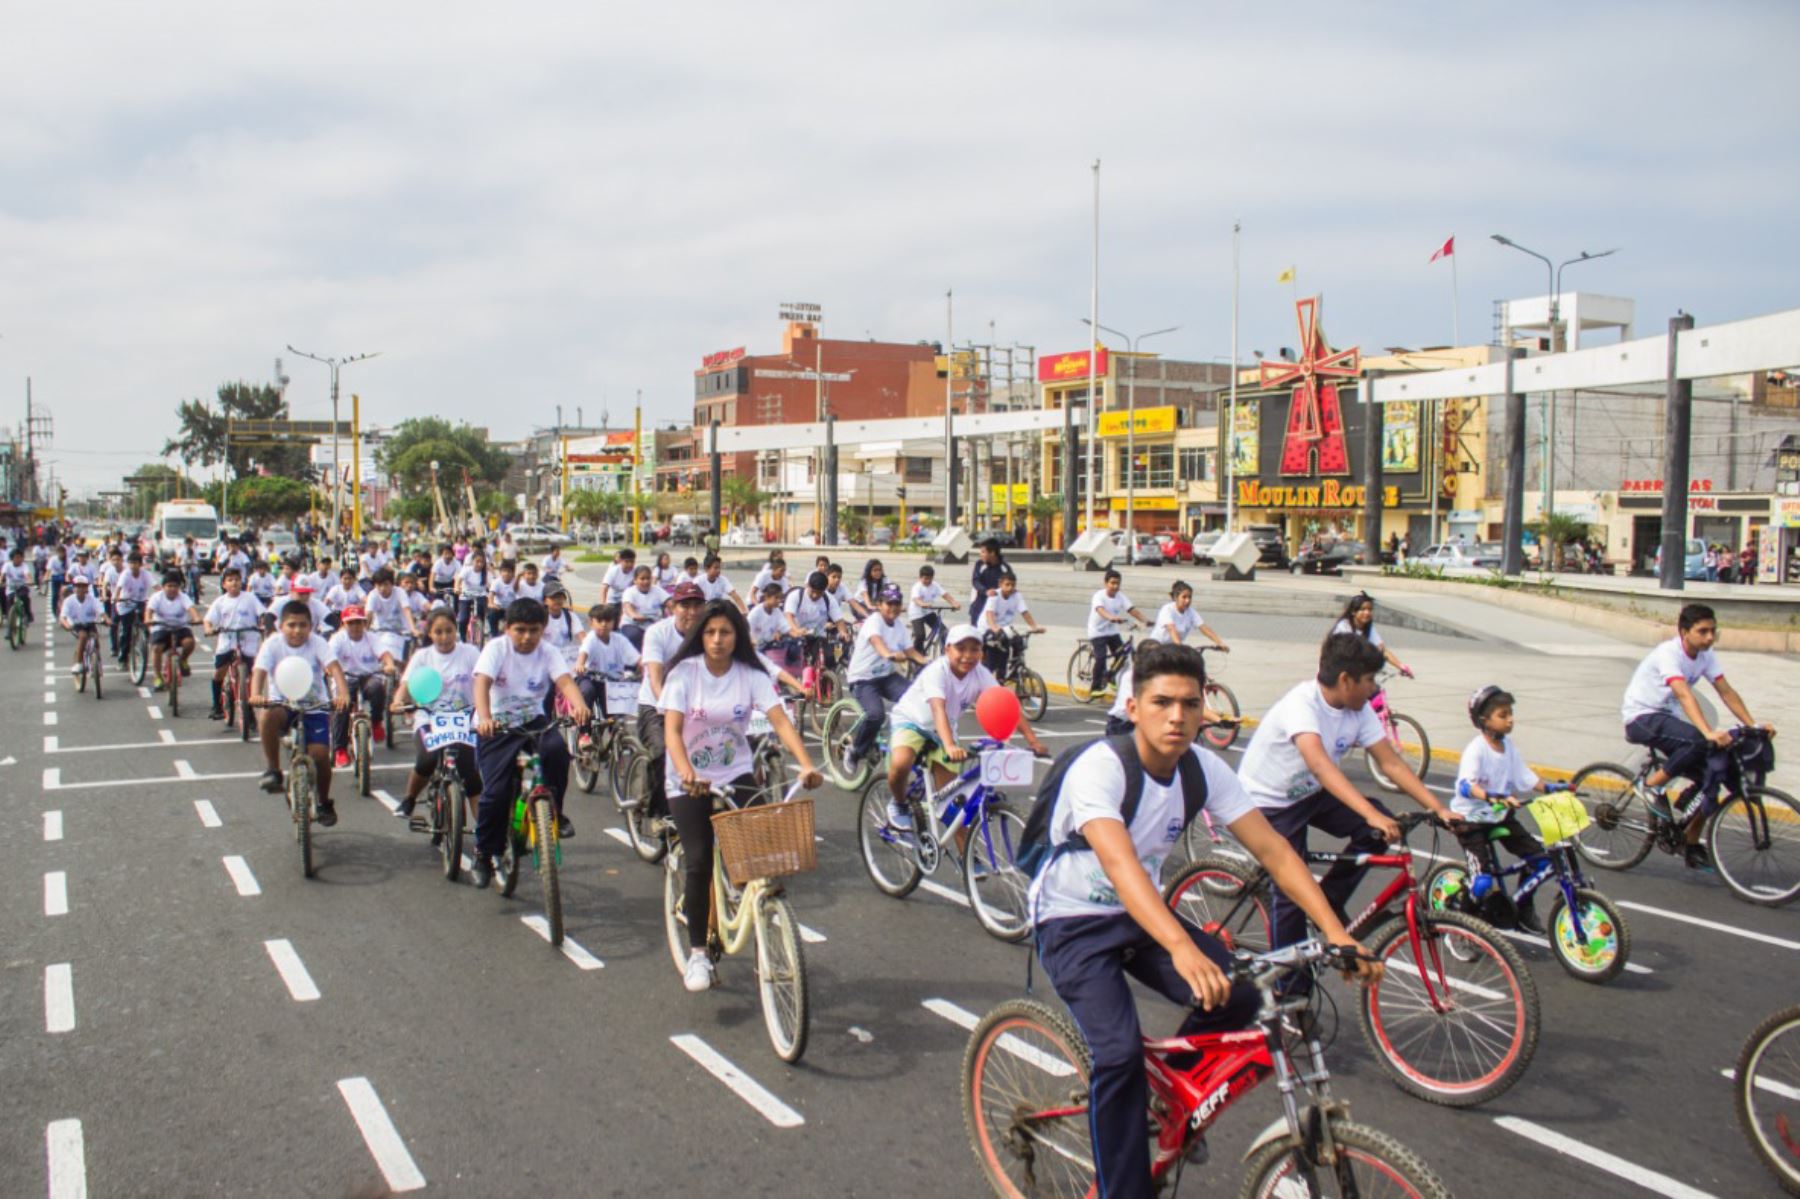 Más de 200 escolares de Chimbote participaron en la bicicleteada "Usa combustible limpio”, con el fin de promover la movilidad sostenible y el estilo de vida saludable en su comunidad. Foto: ANDINA/Gonzalo Horna